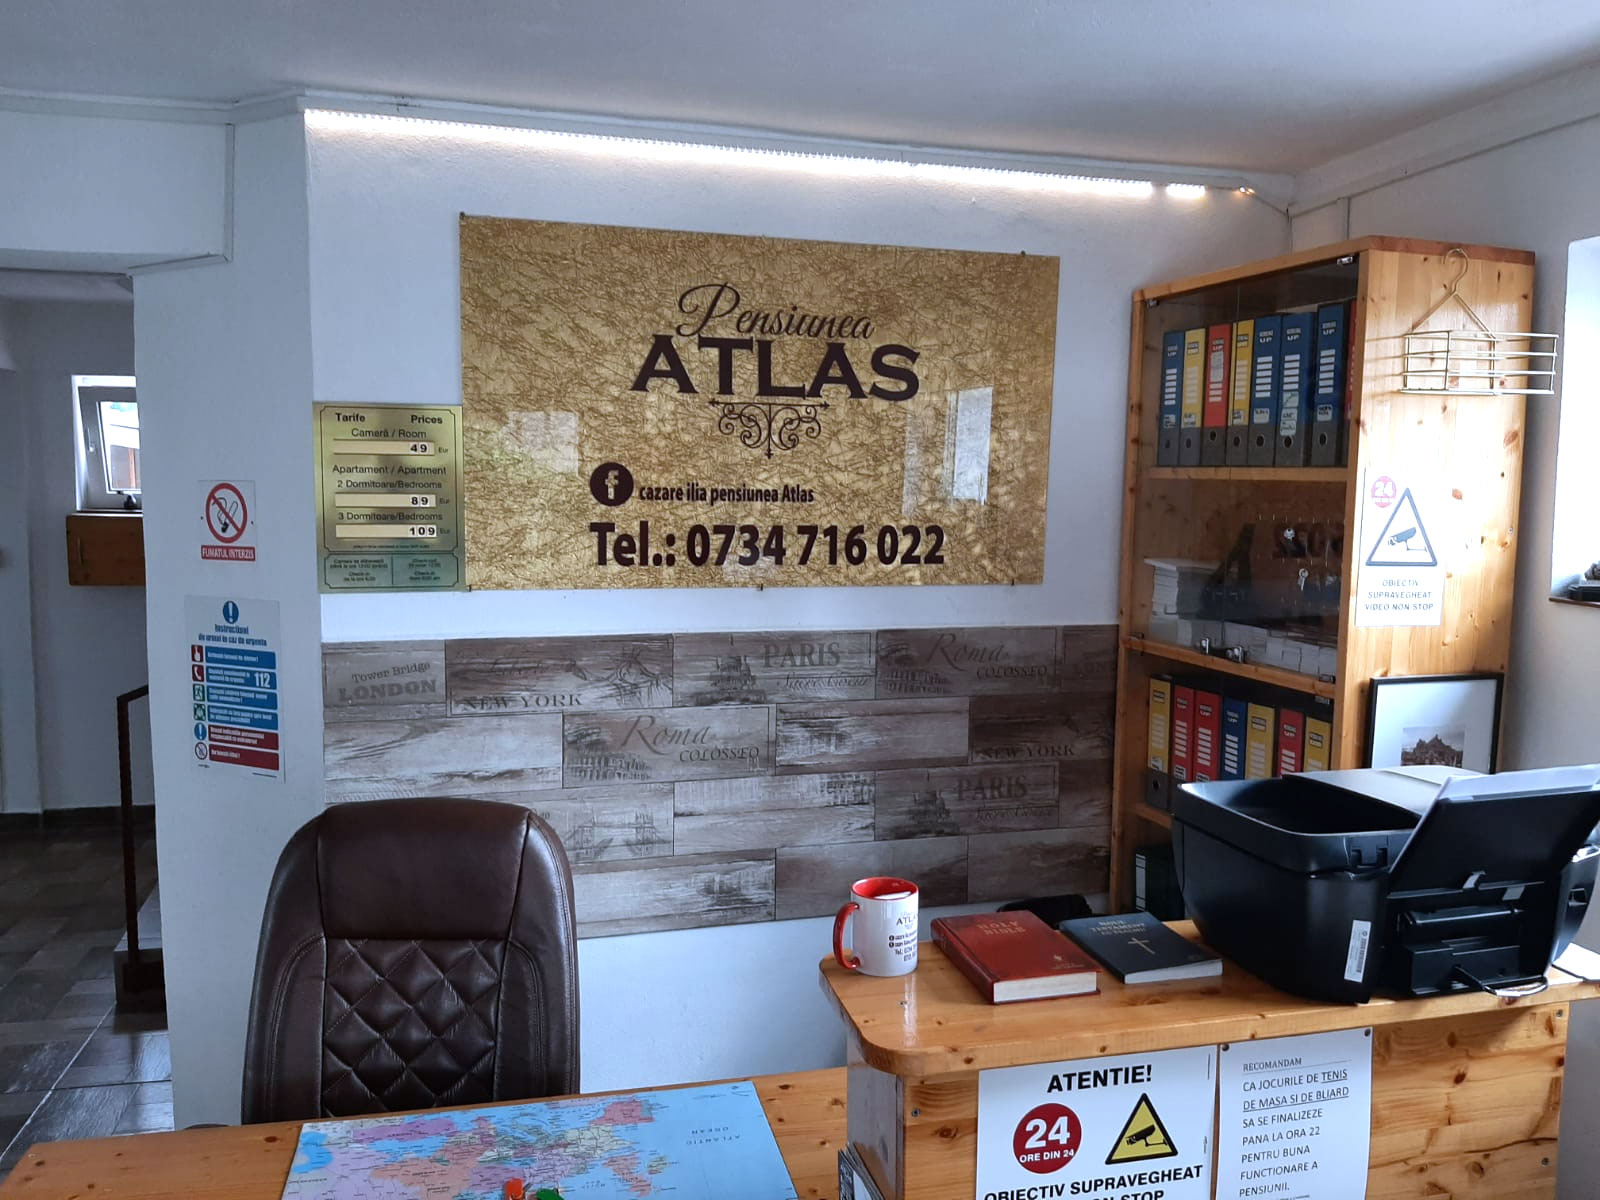 Pension Atlas Ilia - reception